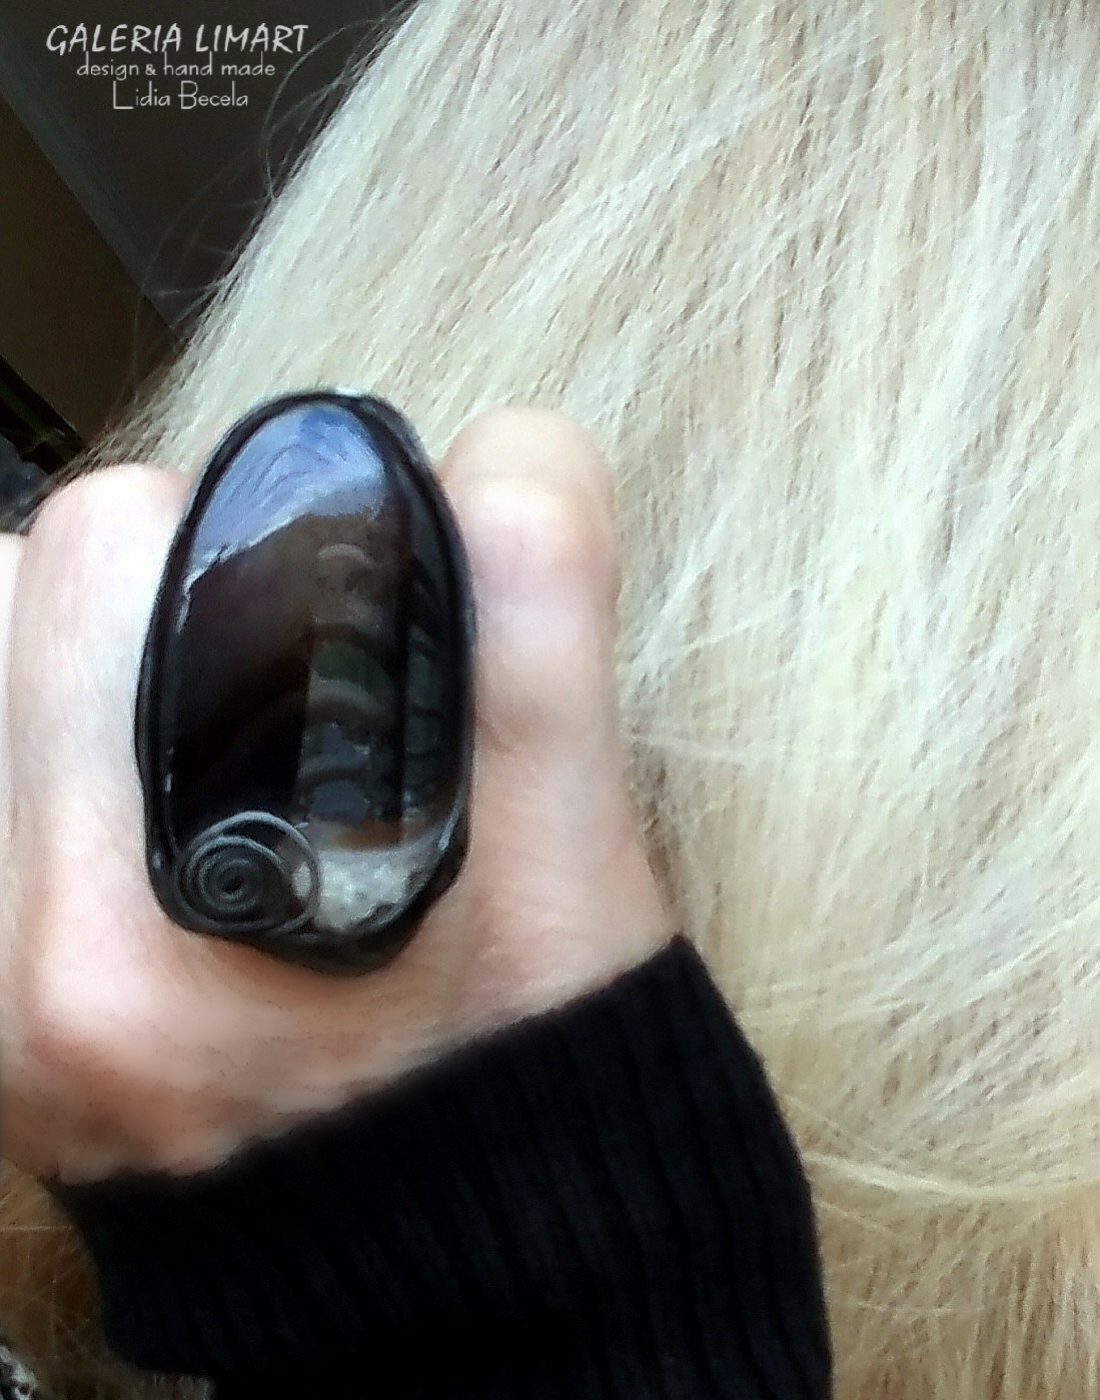 okazały i spektakularny pierścień z ciemnobrązowego agatu brazylijskiego (owalny)